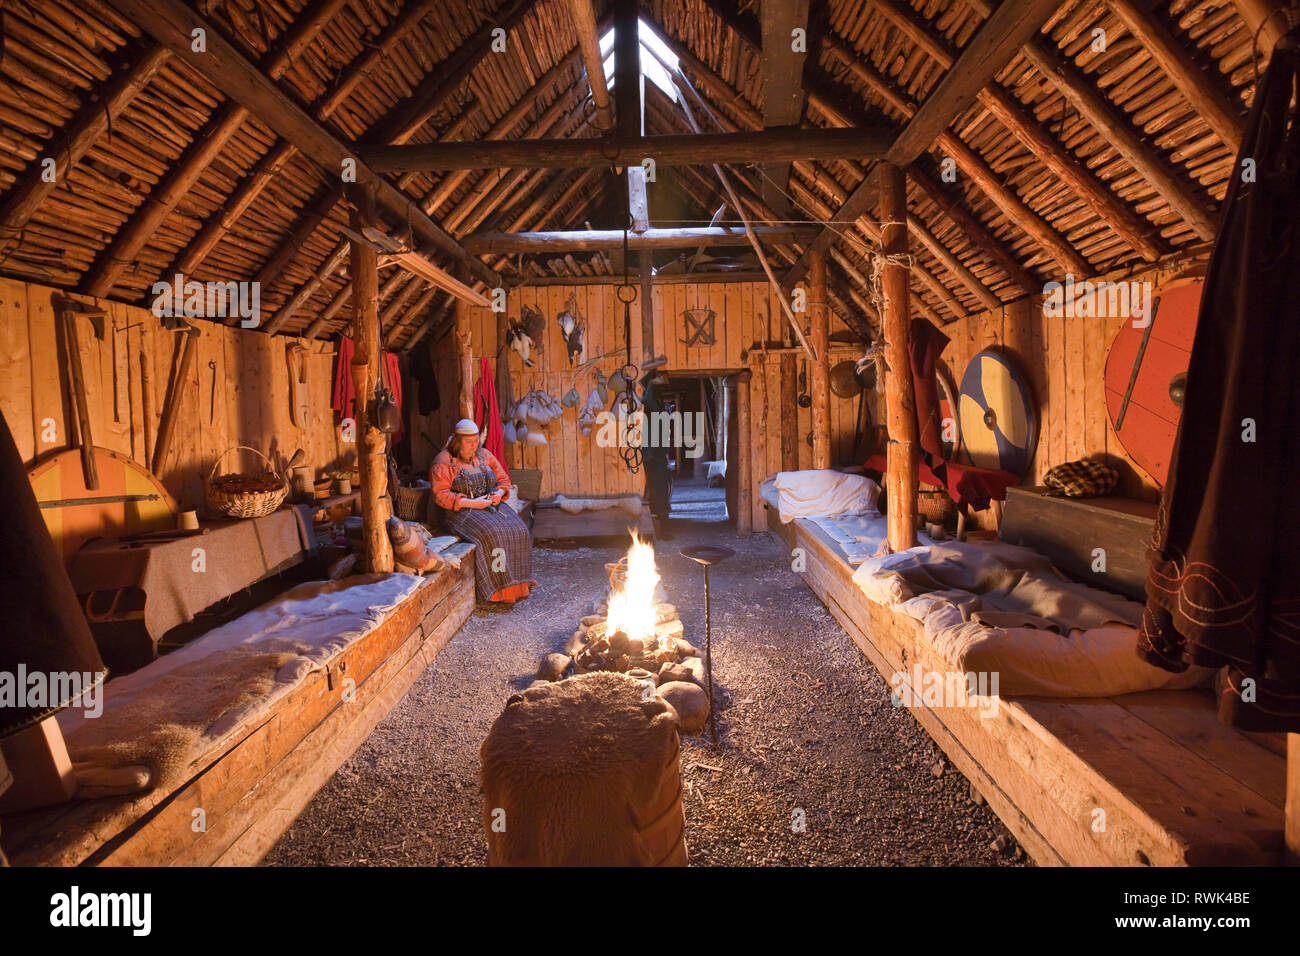 Ricreato interno di un Viking longhouse presso l'Anse aux Meadows National Historic Site, l'Anse aux Meadows, Terranova, Canada Foto Stock